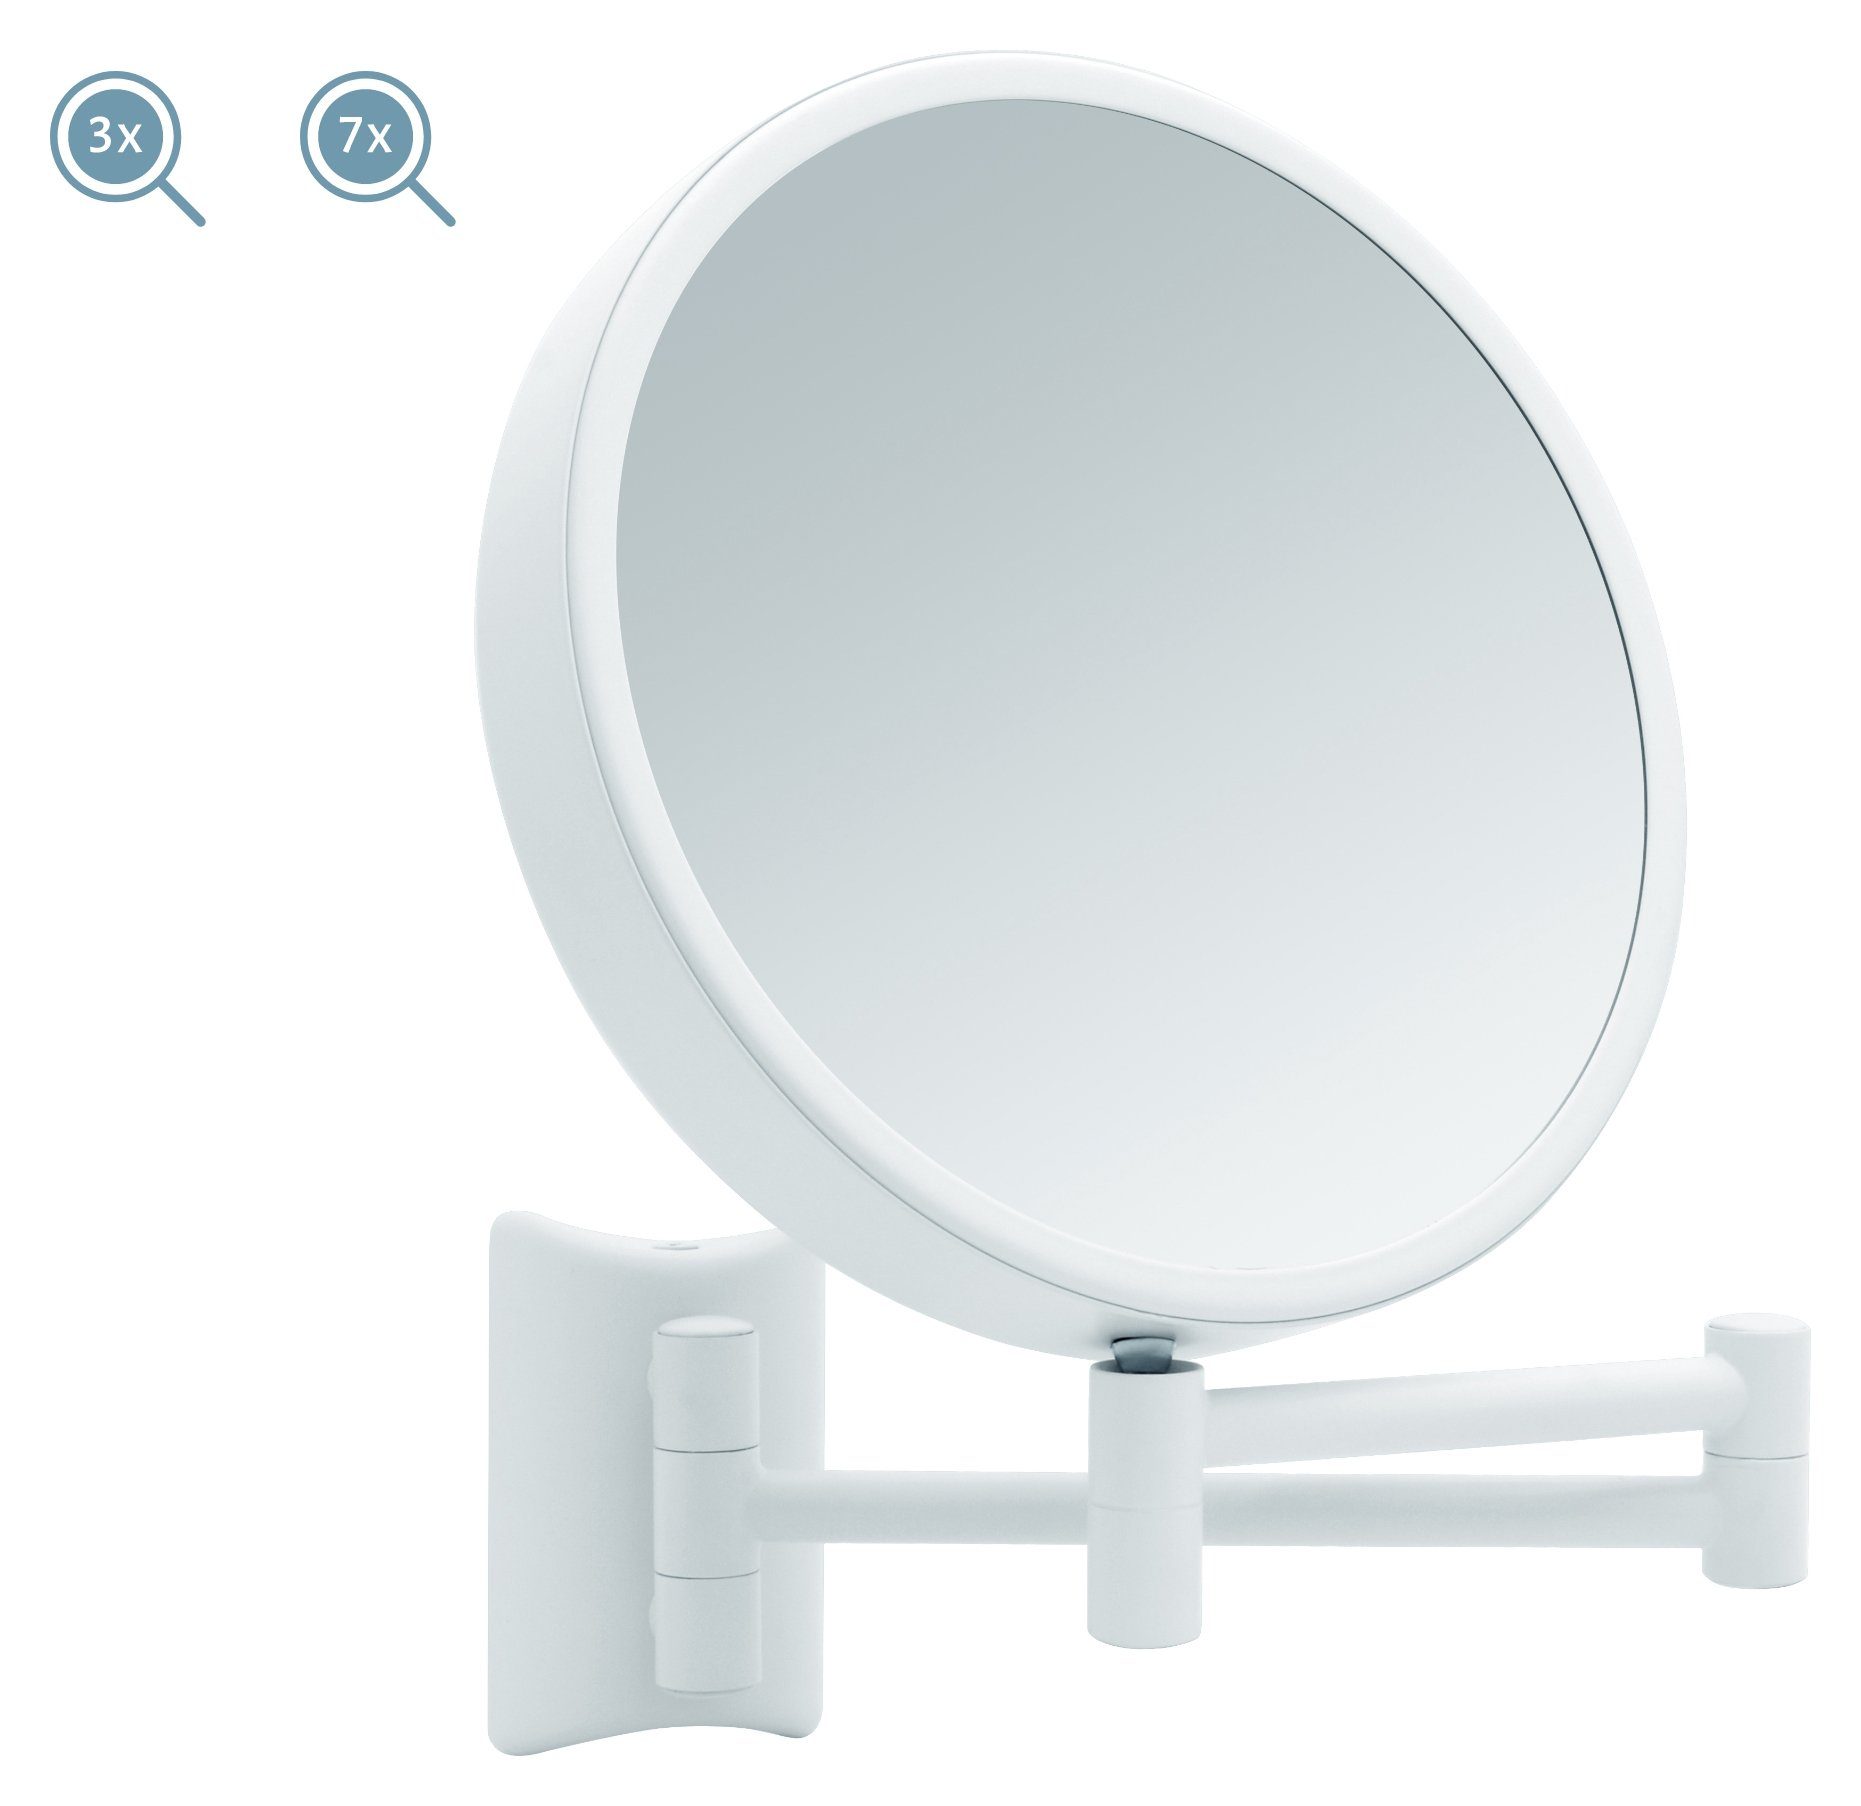 Rasierspiegel / weiß, Schminkspiegel Imola, 3x Vergrößerung 7x 2-seitig, 360° Libaro Kosmetikspiegel